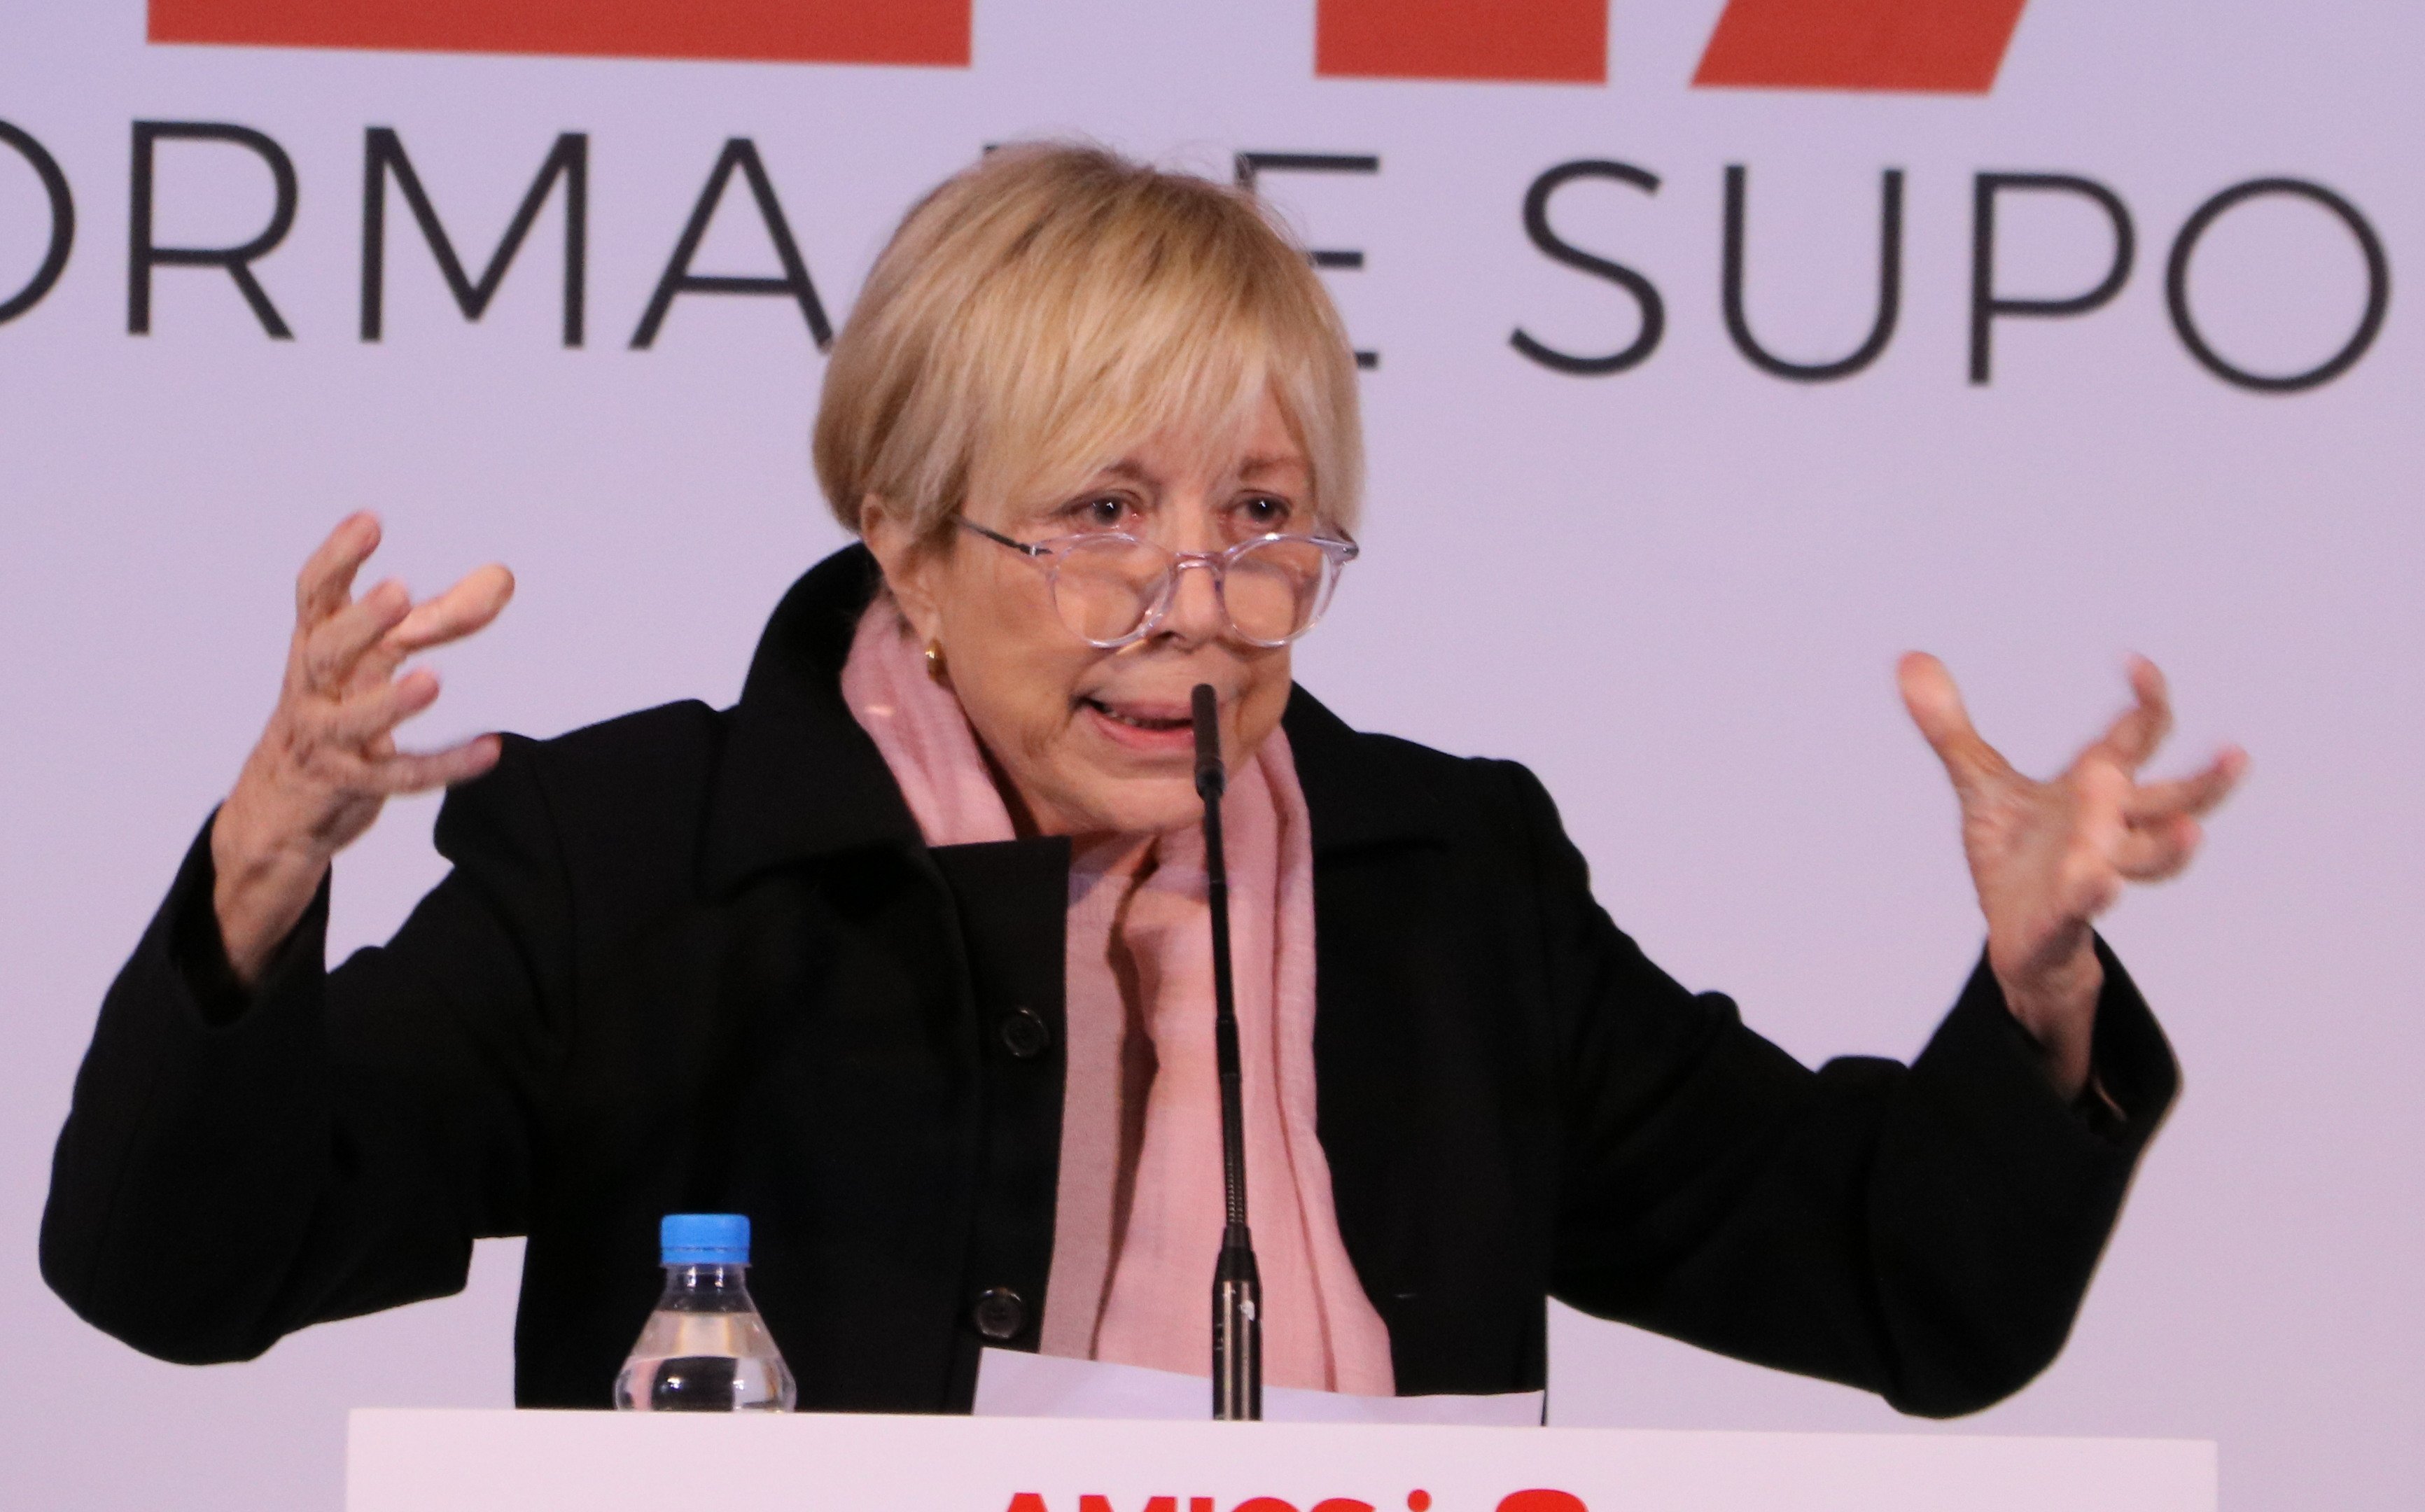 Rosa Maria Sardà perd els papers atacant els indepes: "En Catalunya hay racismo"